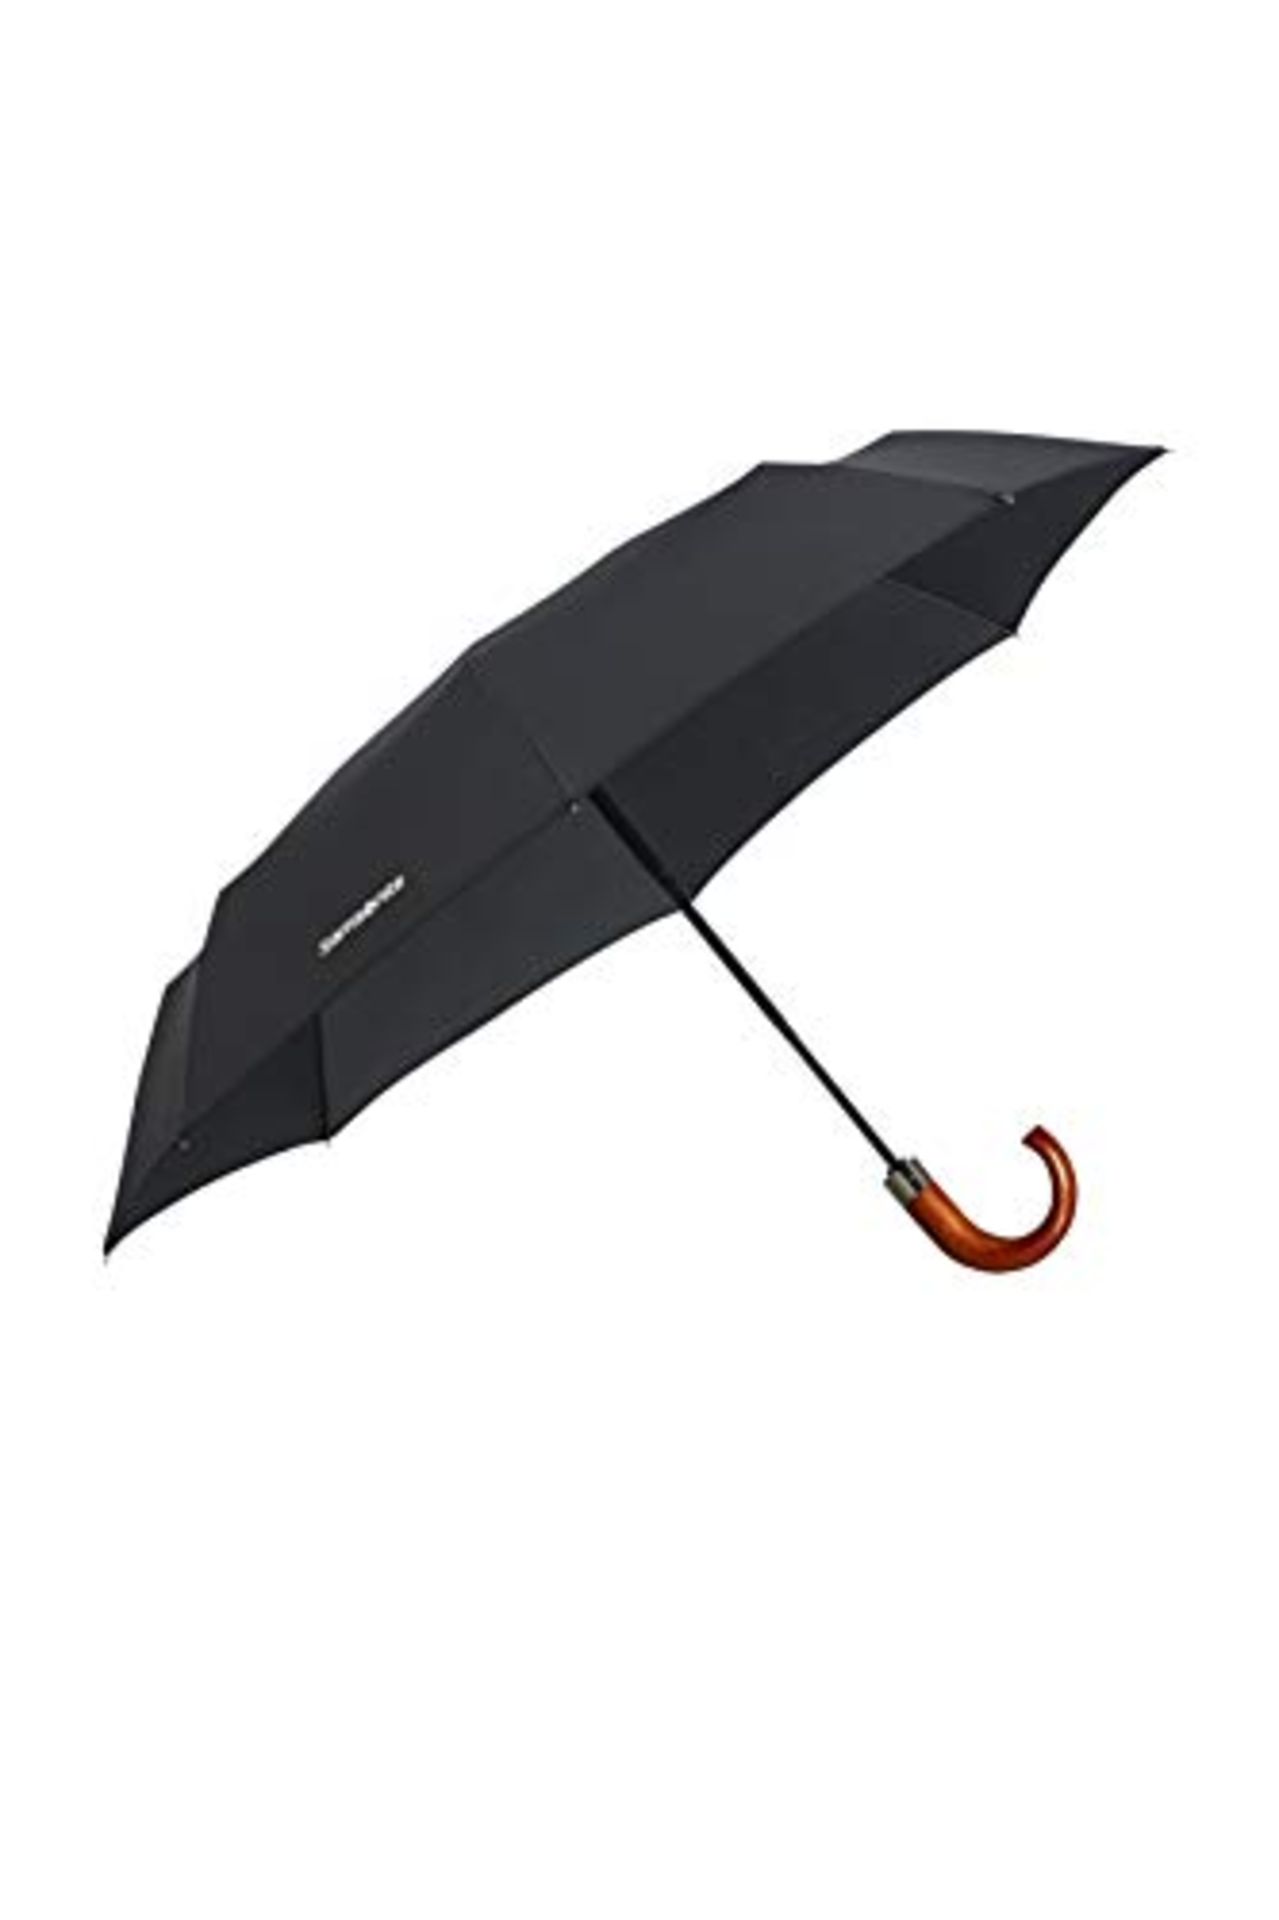 SAMSONITE Wood Classic S - 3 Section Auto Open Close Crook Umbrella, 33 cm, Black